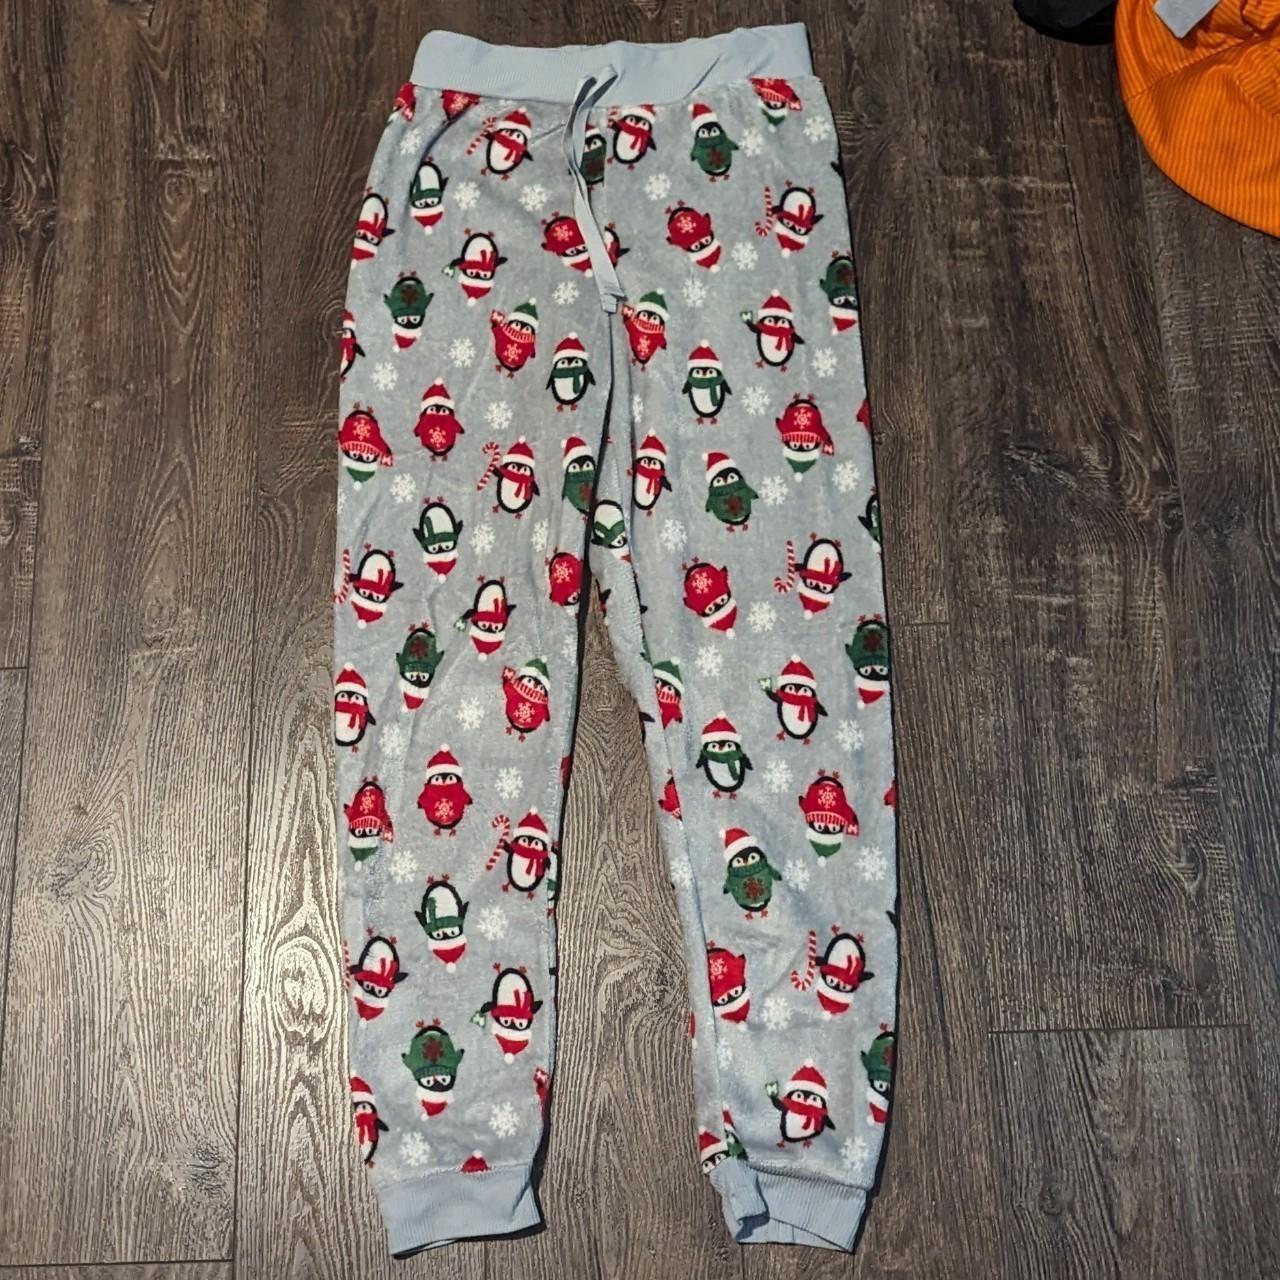 Christmas pajama pants message me for bundles ill - Depop